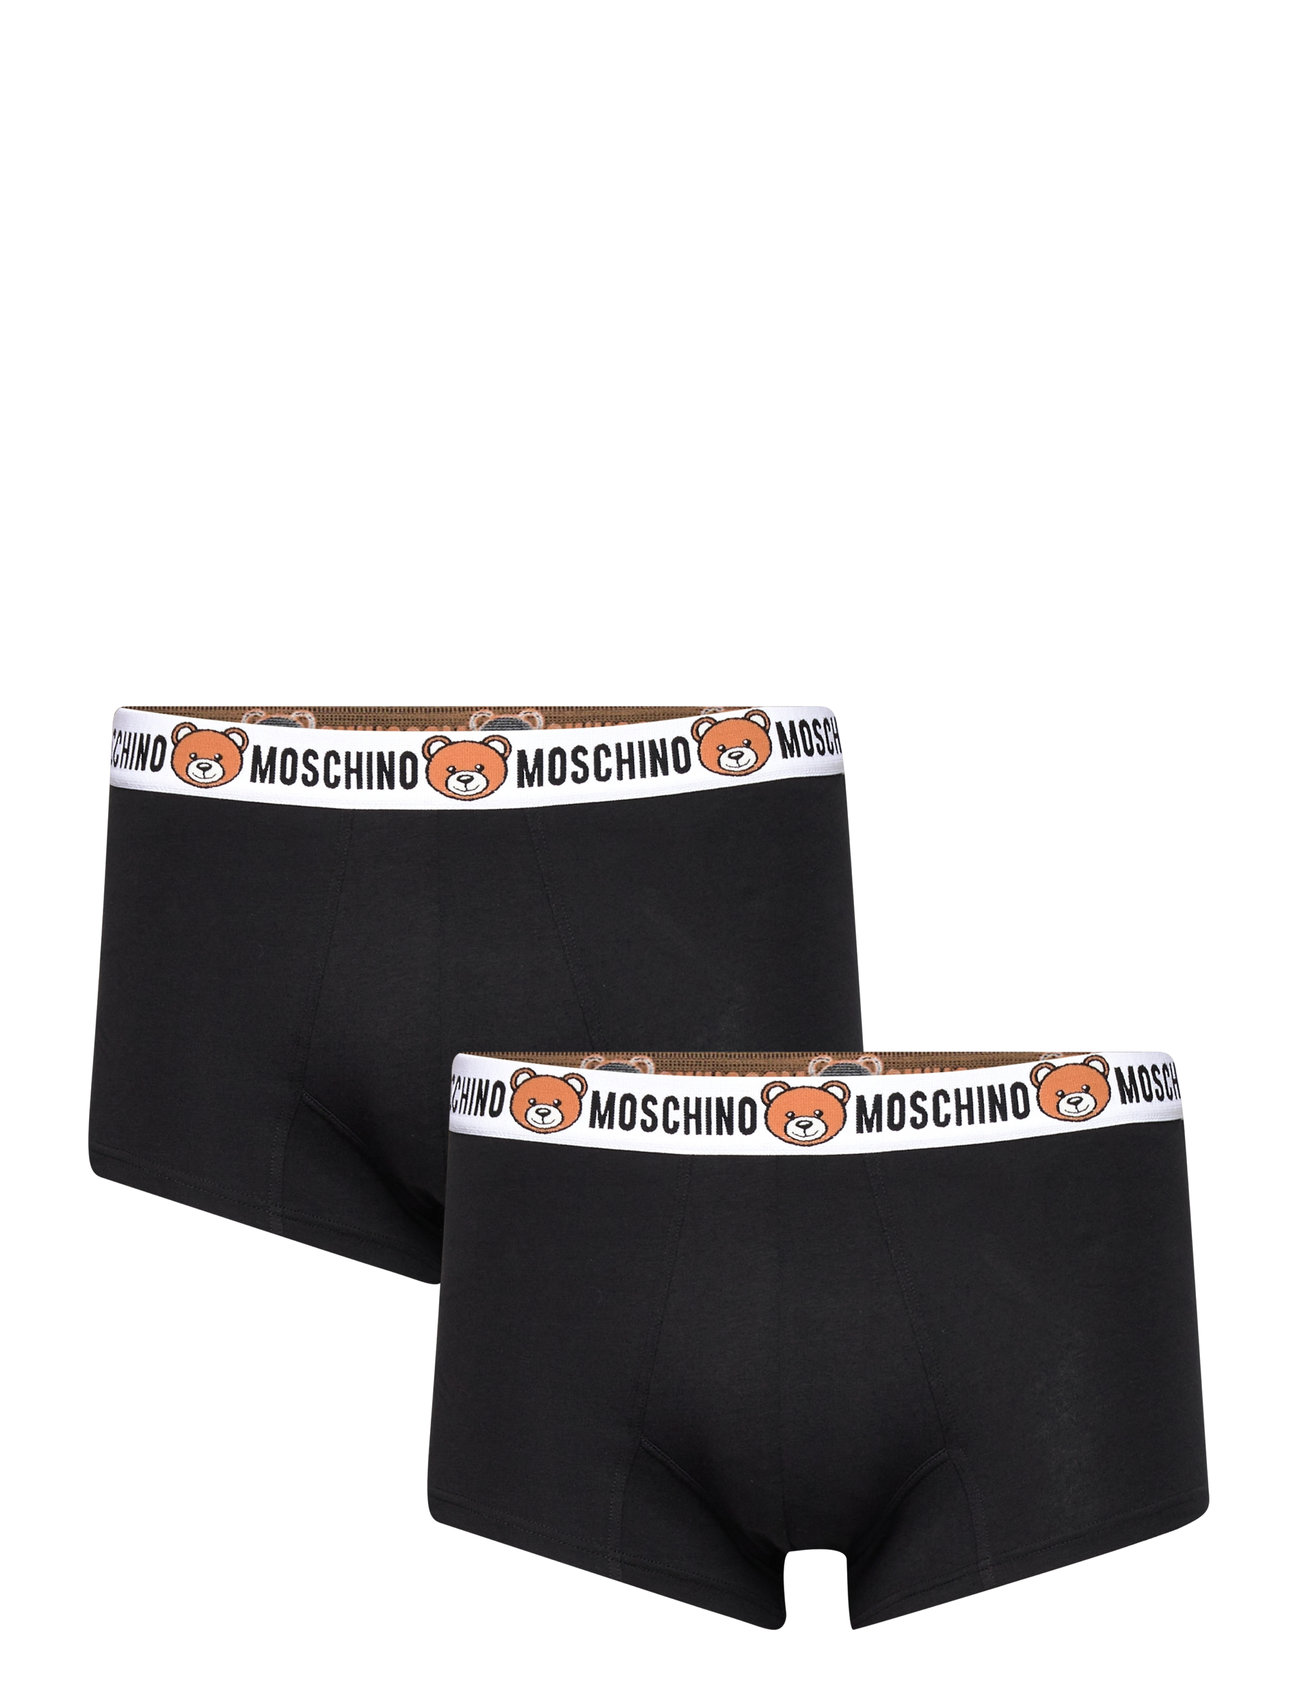 kanker Wat is er mis mozaïek Moschino Underwear Slip - Boxershorts - Boozt.com